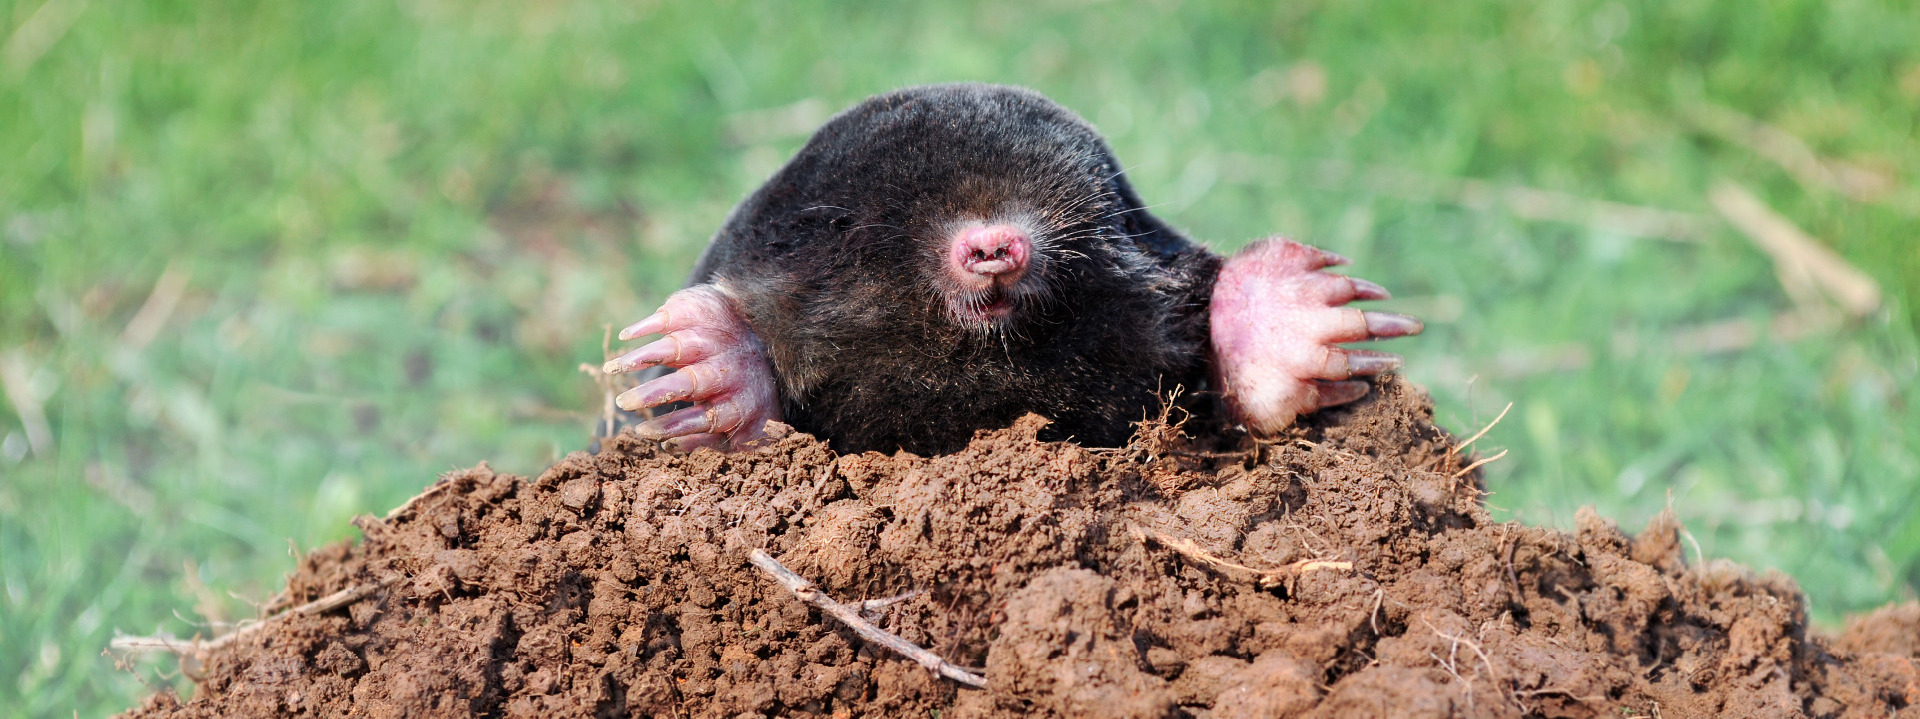 Mole in molehill